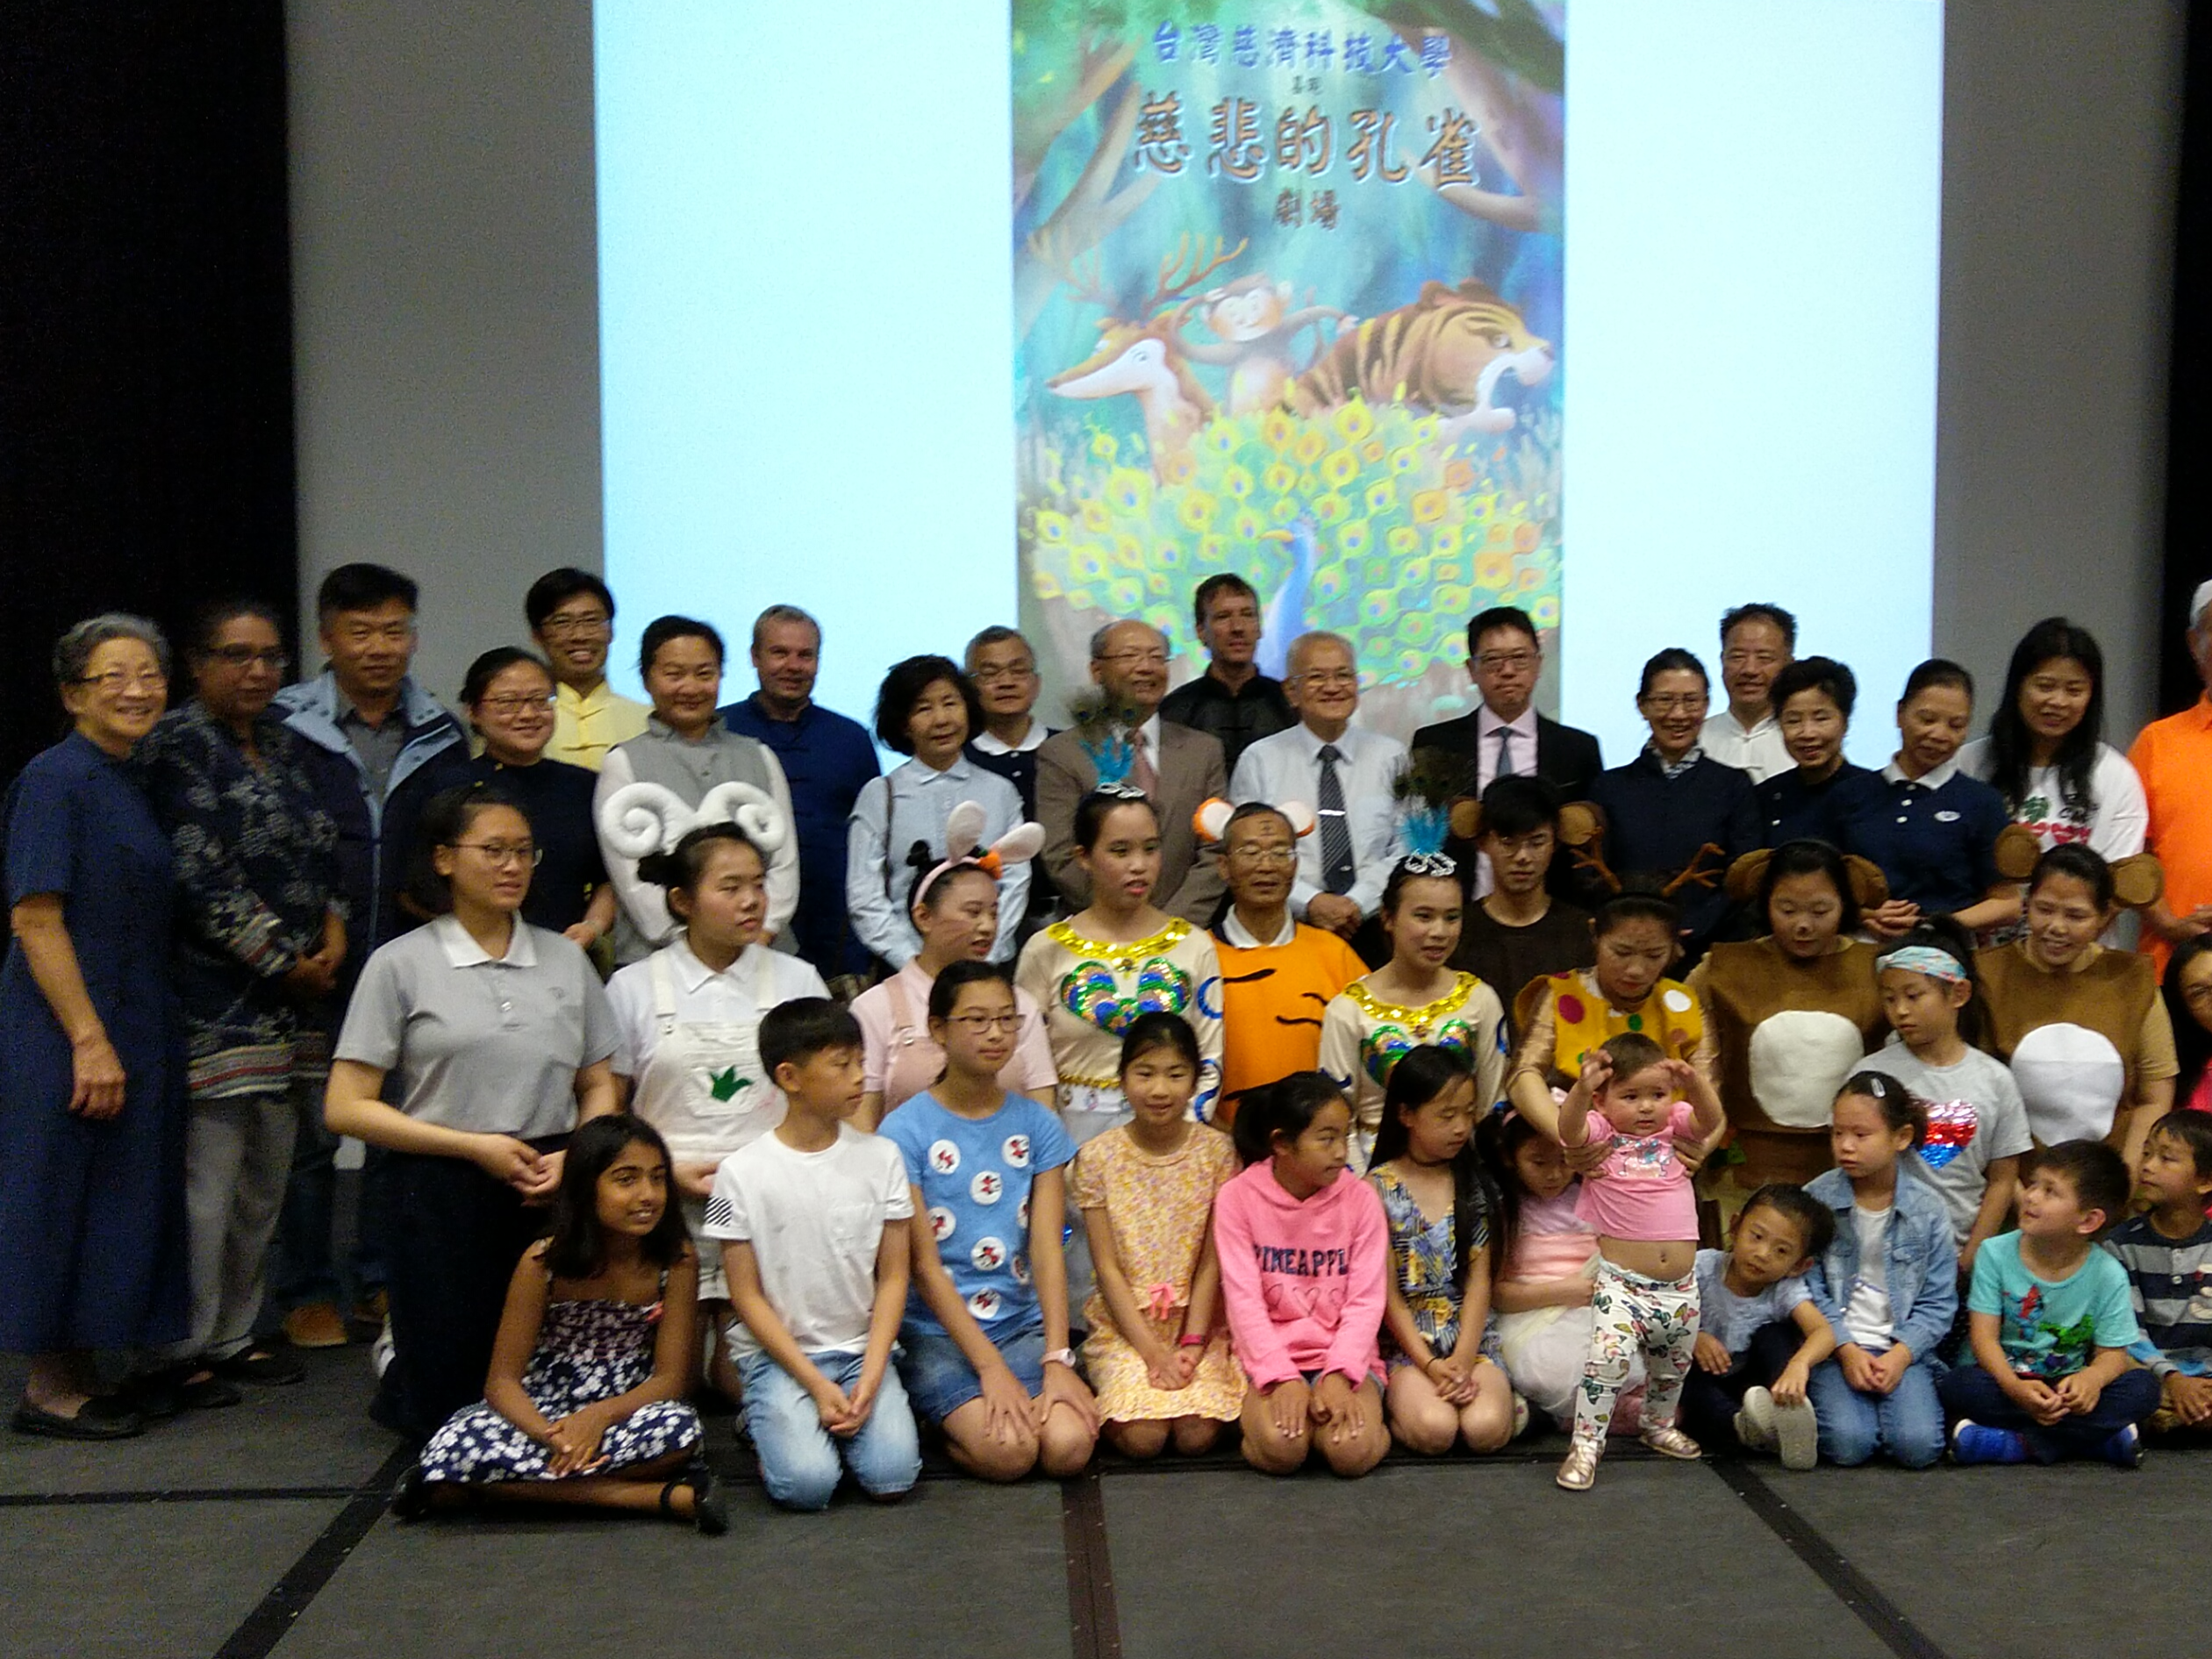 英國倫敦慈濟人文學校2019海外正體漢字文化節開放日園遊會熱鬧溫馨圖片